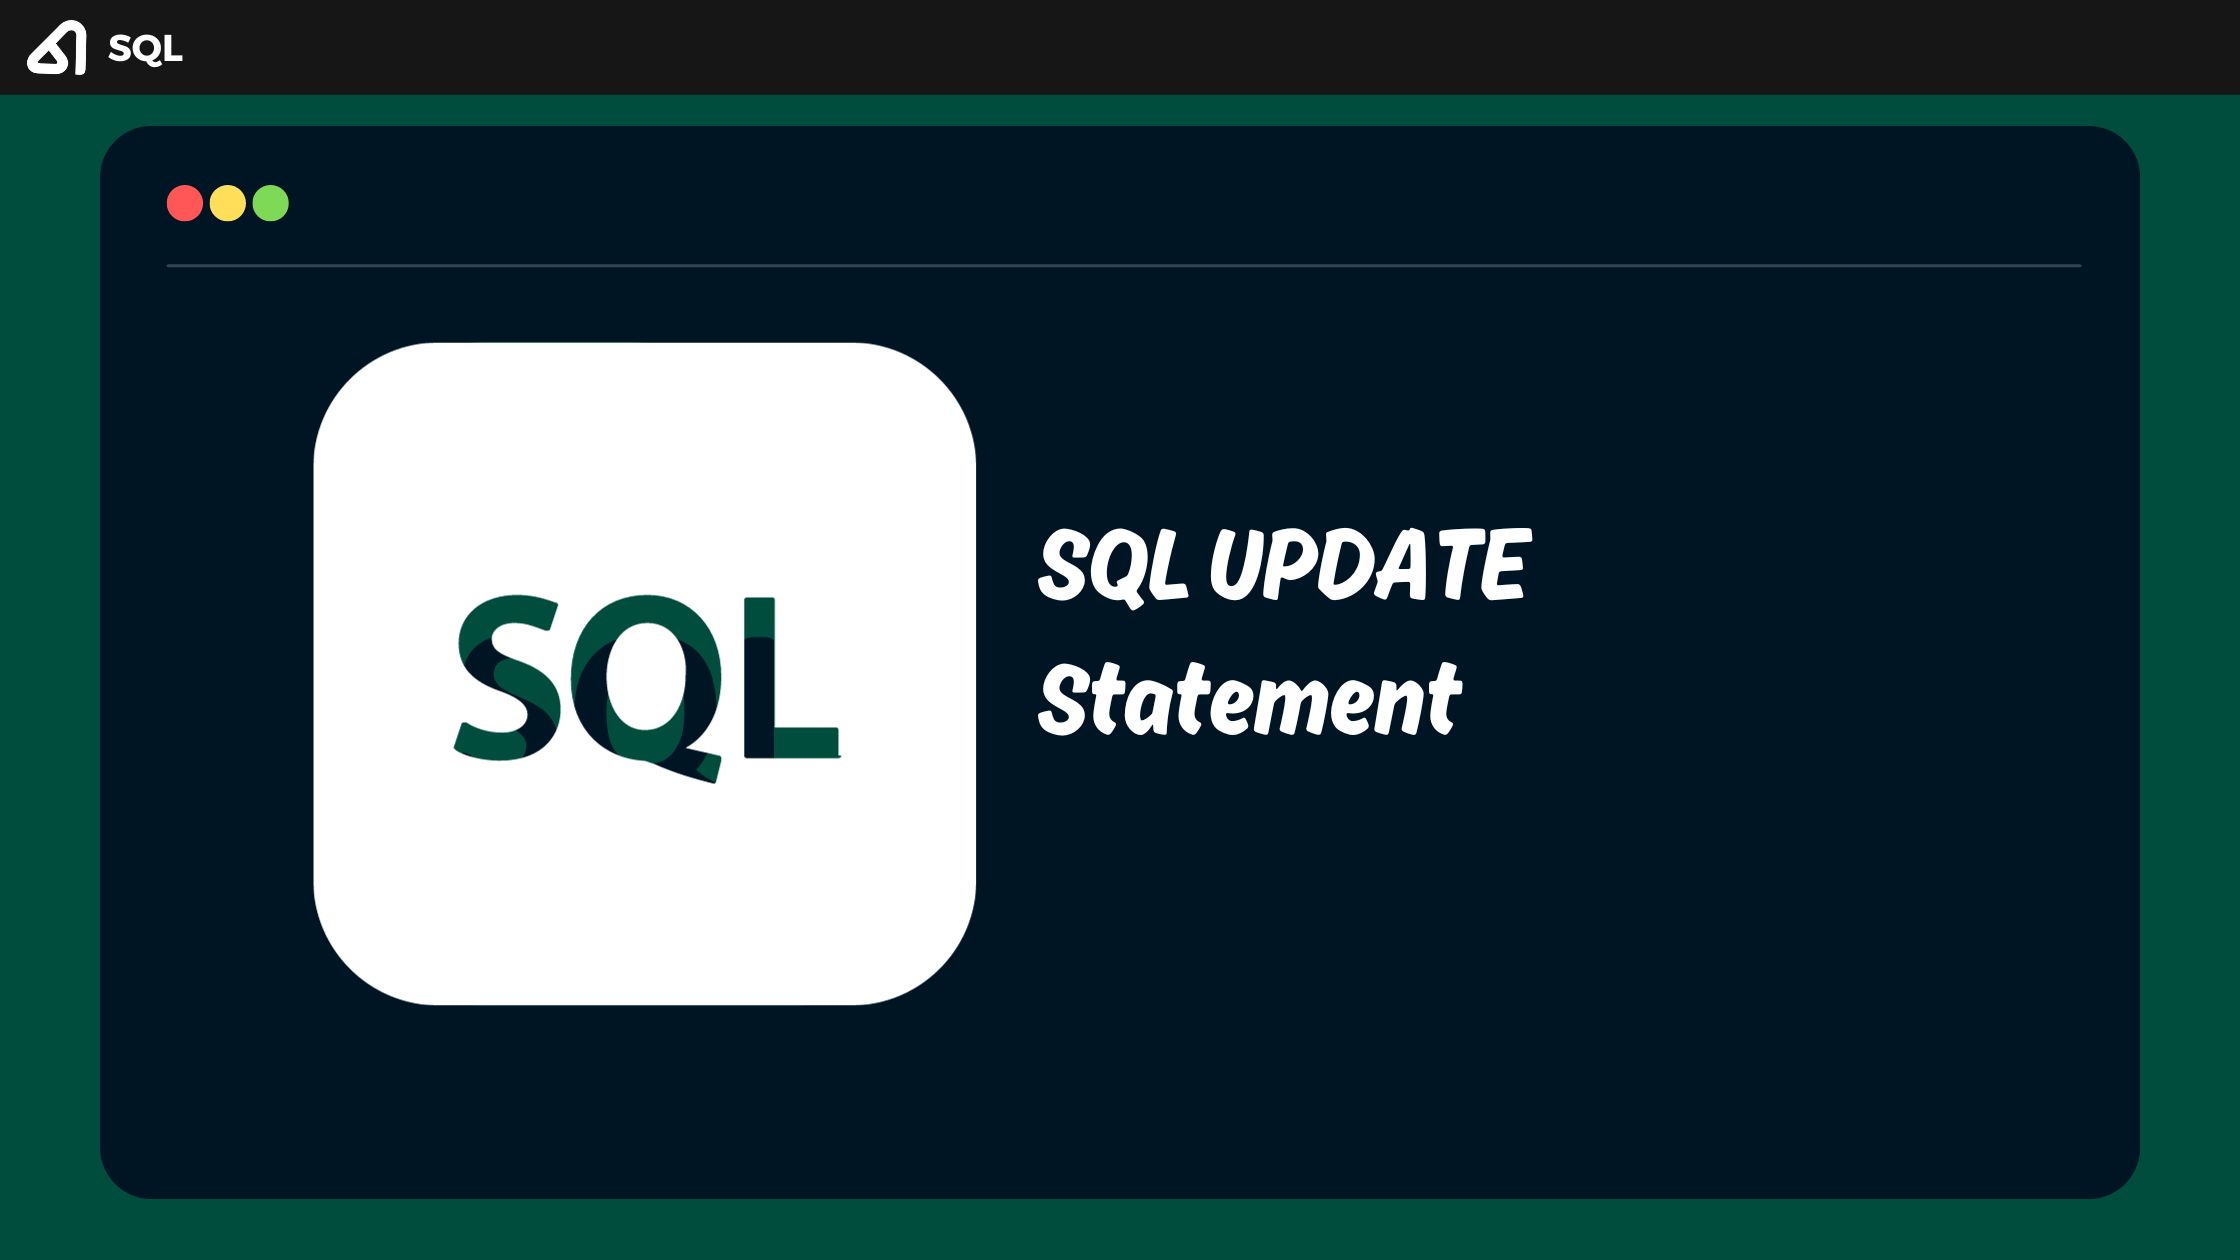 SQL UPDATE Statement